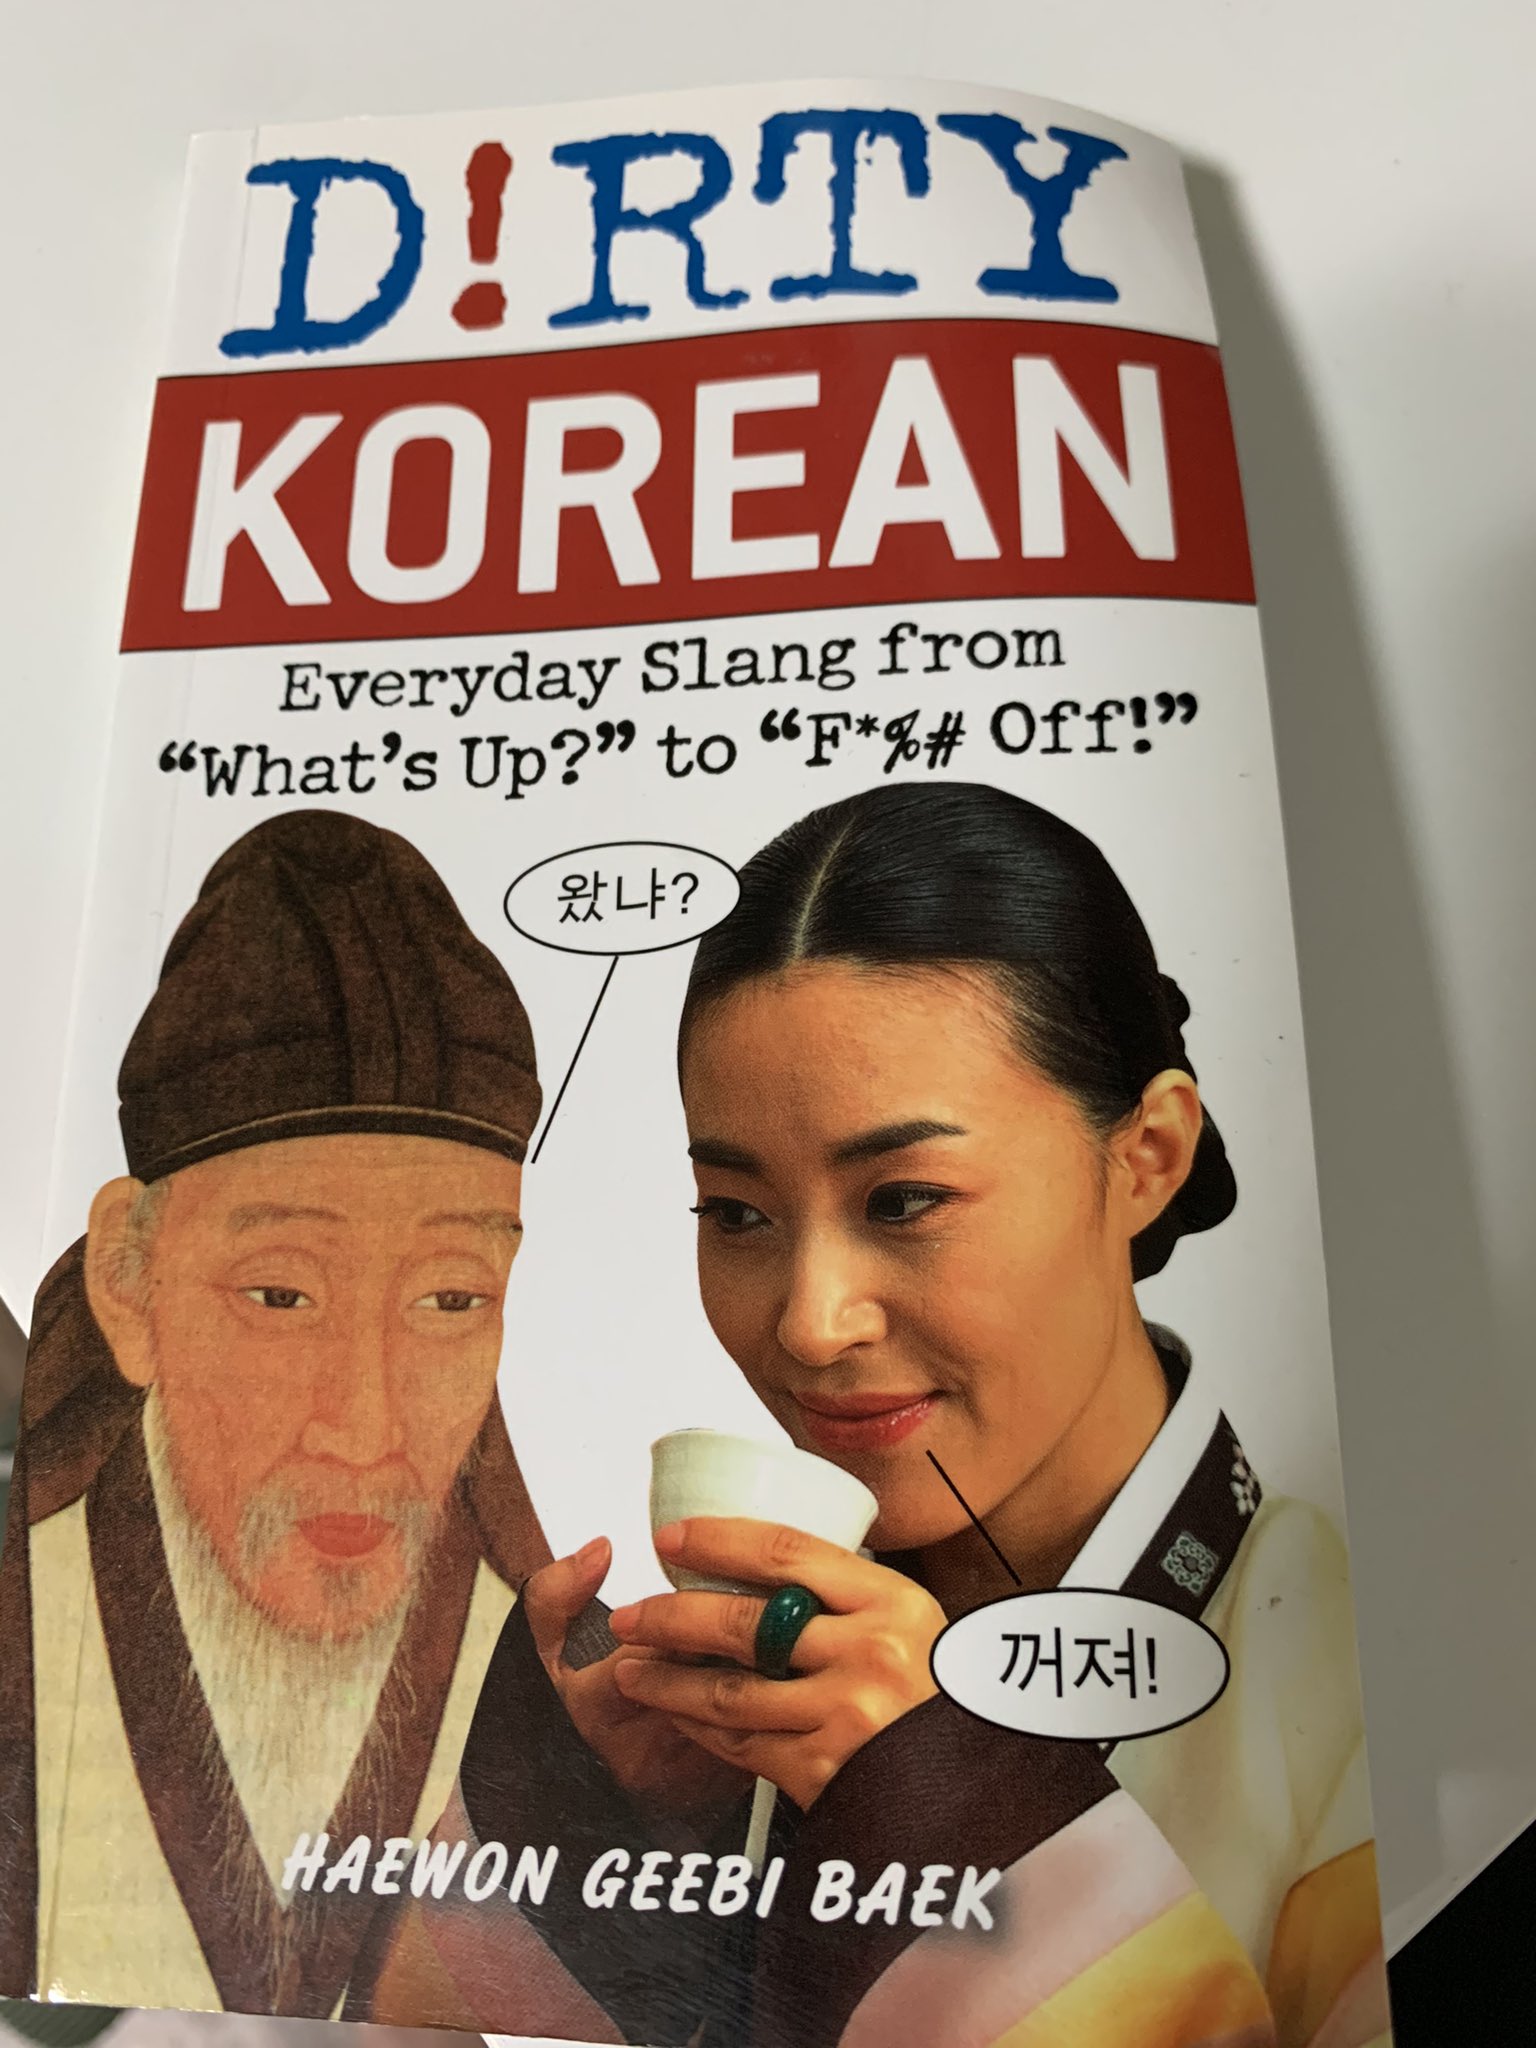 더러운 한국말 번역하기...